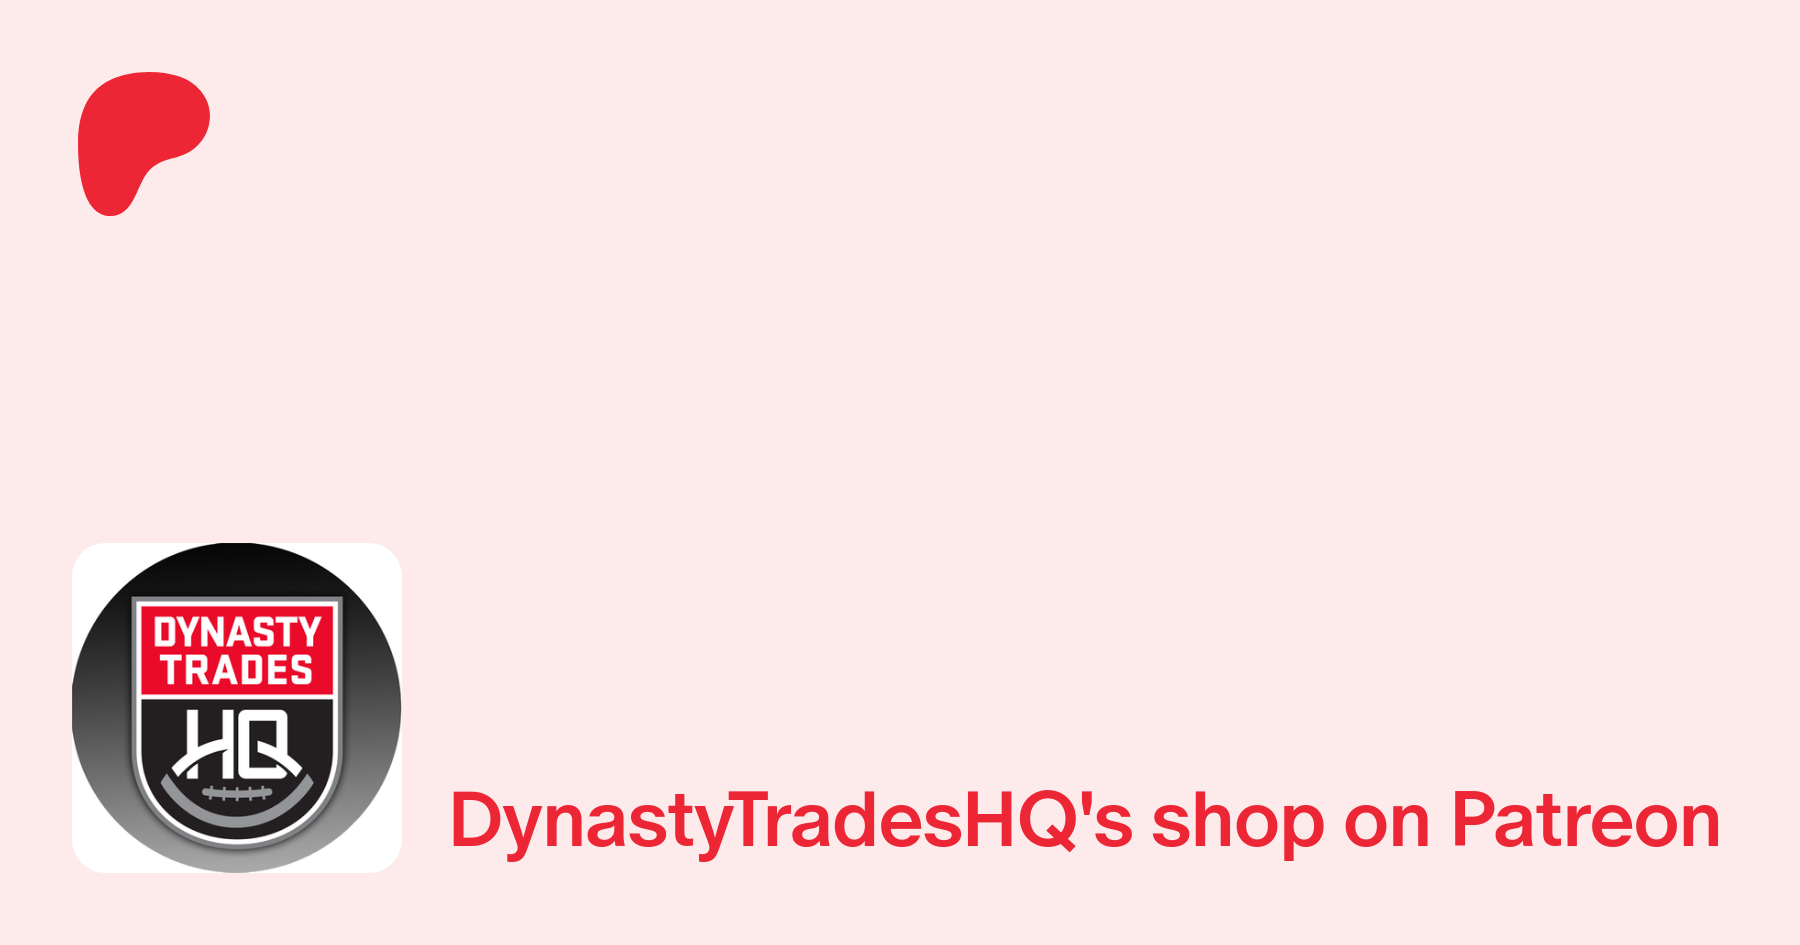 Dynasty Trades in 5, Dynasty Trades HQ